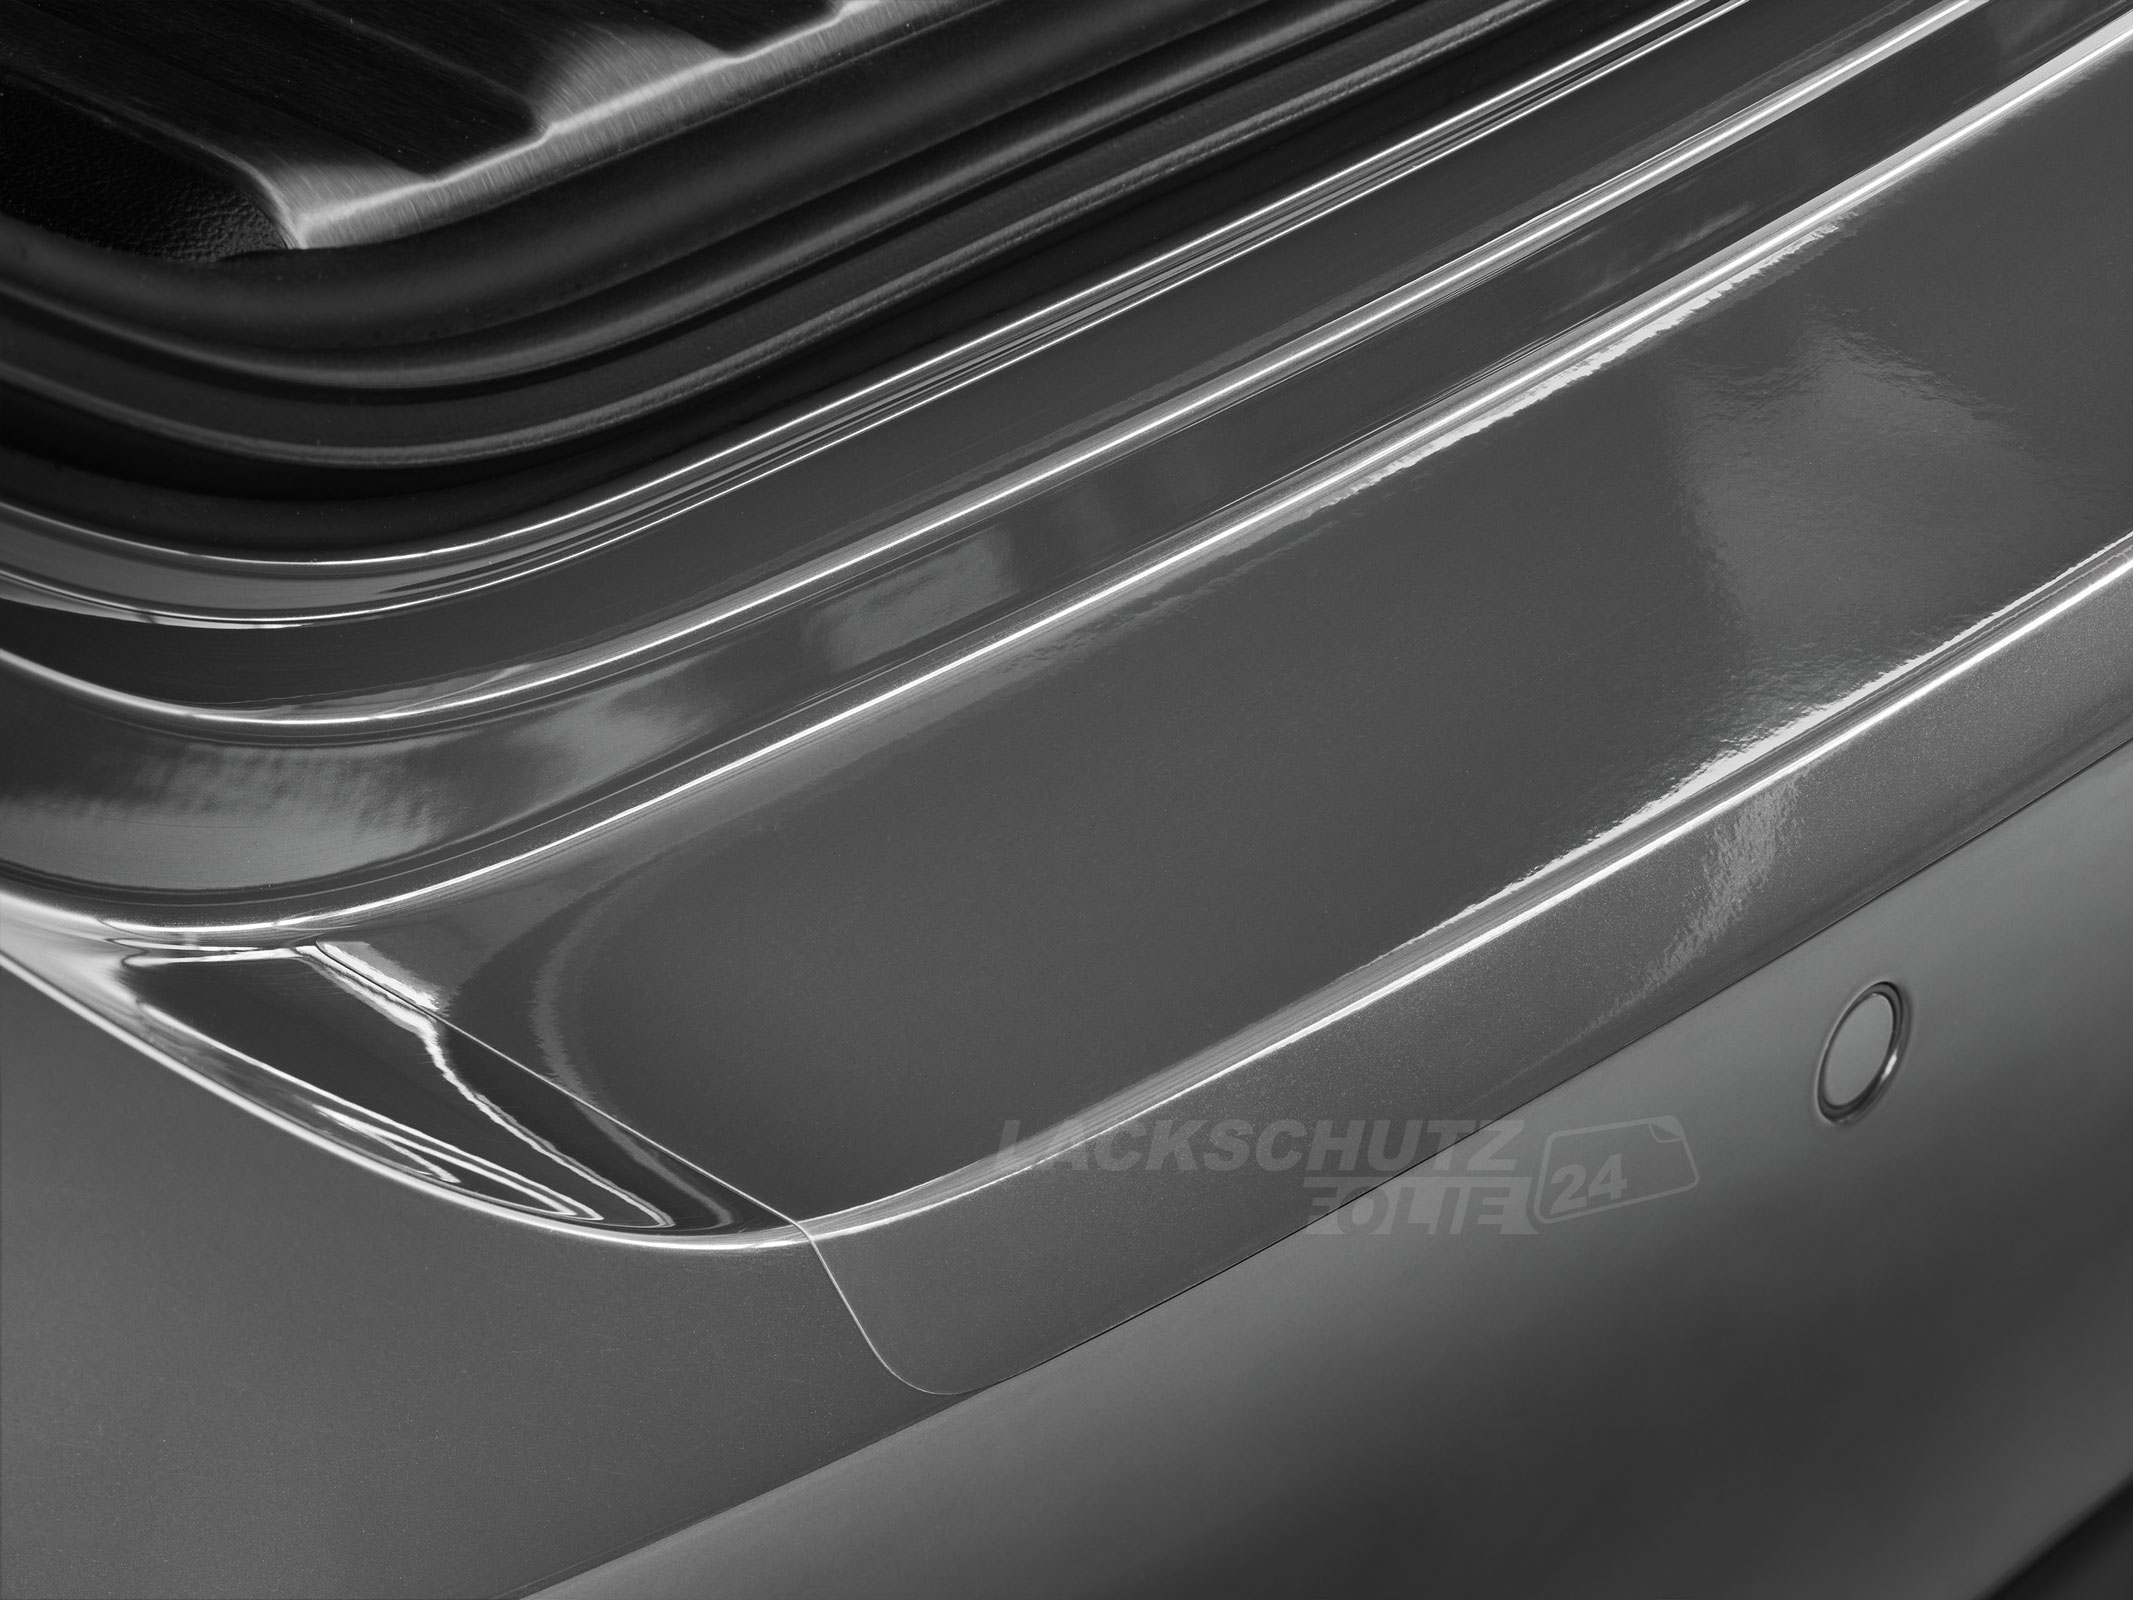 Ladekantenschutzfolie - Transparent Glatt Hochglänzend 240 µm stark für Volvo S80 ab BJ 2013